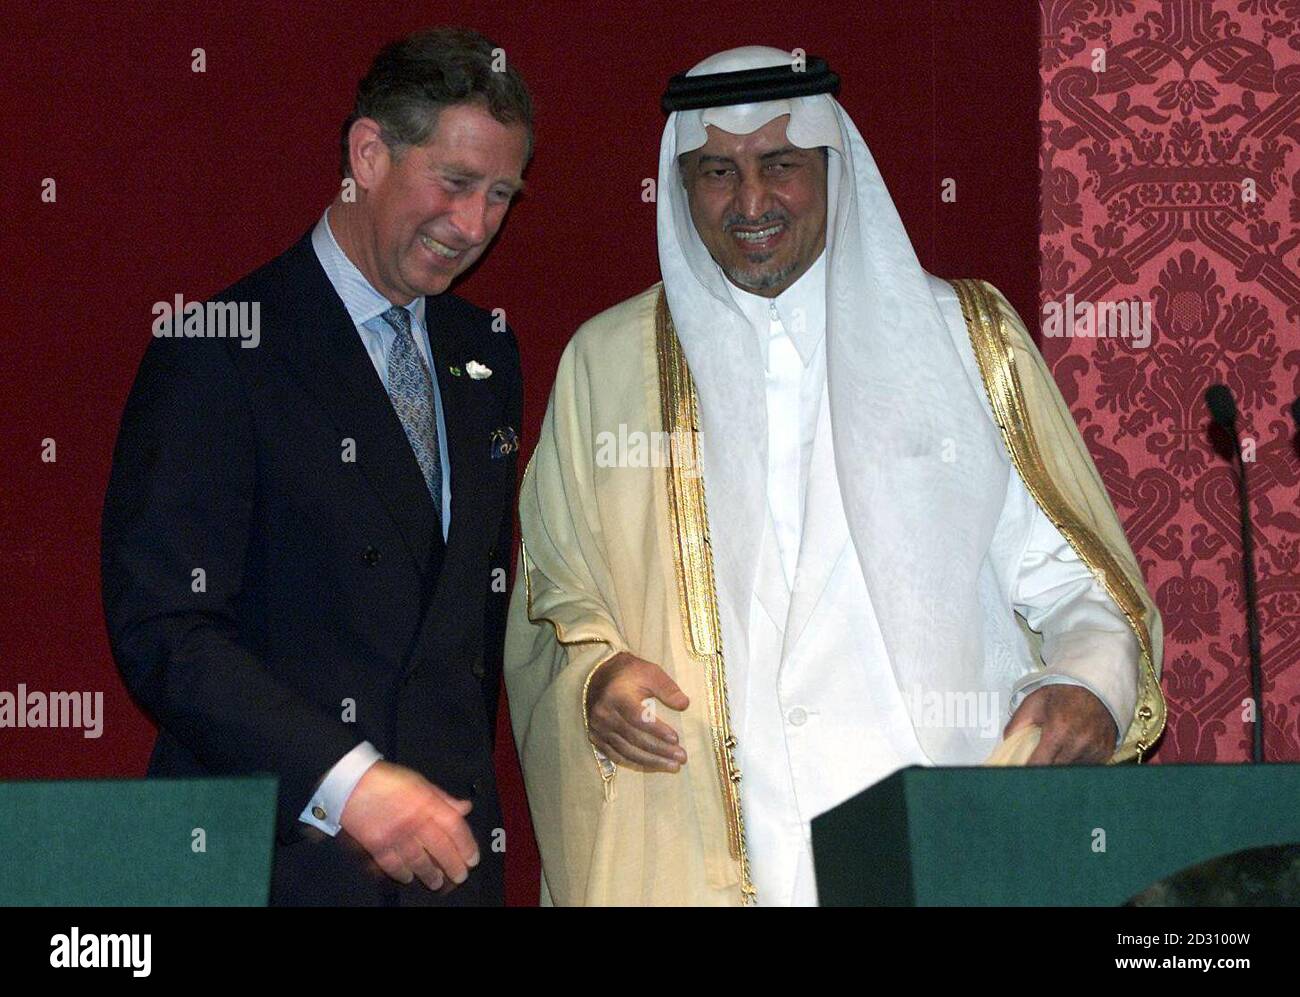 Il Principe del Galles (L) partecipa a un ricevimento per lanciare la sua mostra congiunta di dipinti con il Principe Khalid al-Faisel al-Saud, presso la Banqueting House di Whitehall, nel centro di Londra. Foto Stock